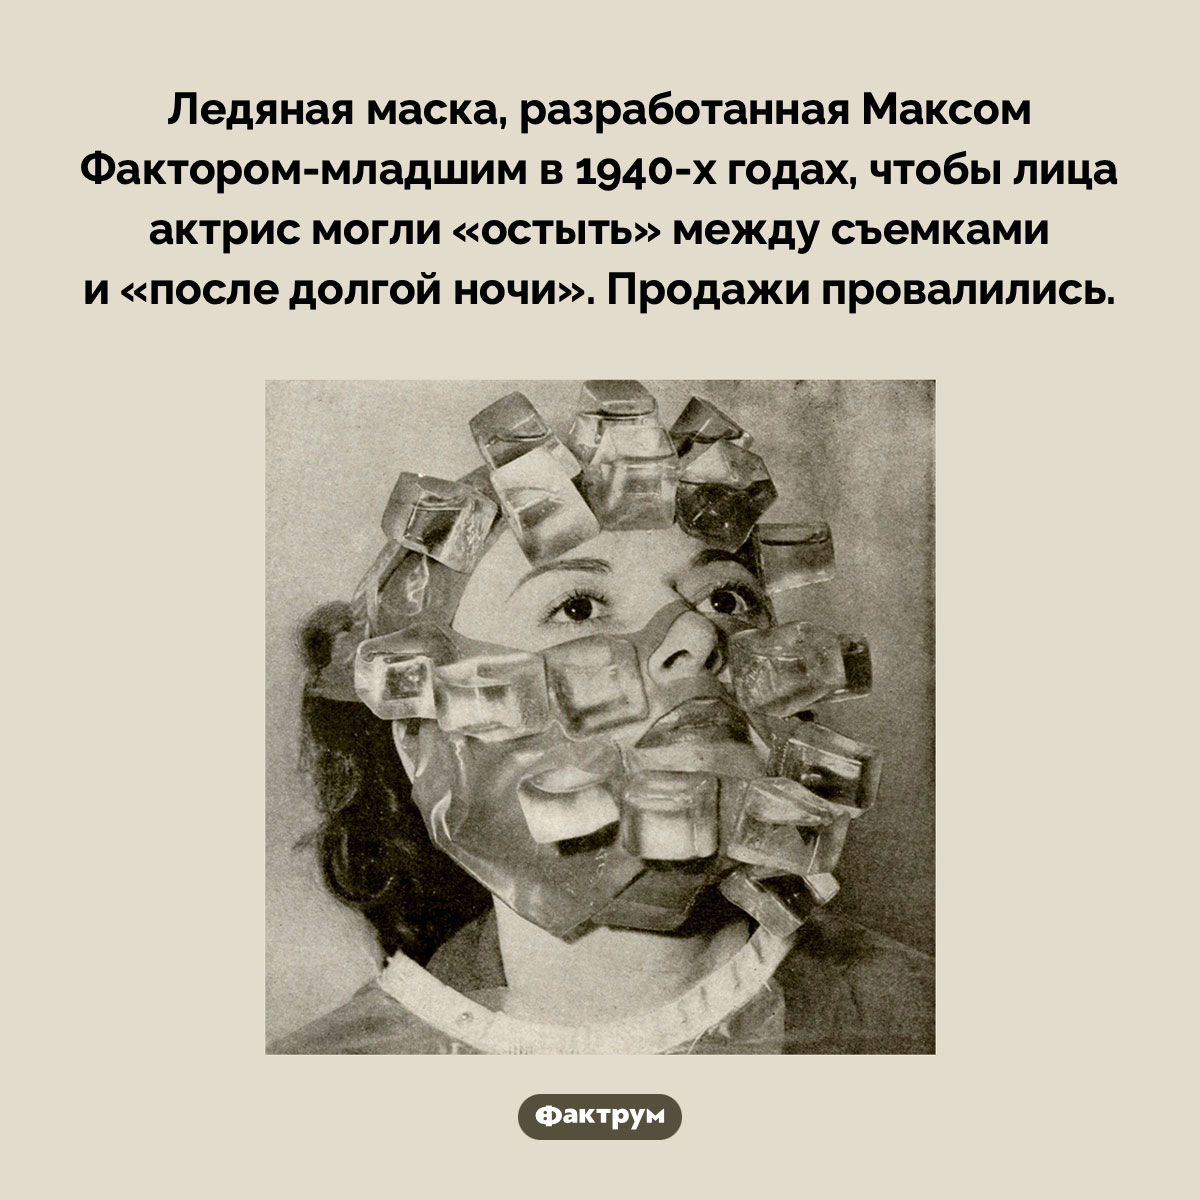 Ледяная маска. Ледяная маска, разработанная Максом Фактором-младшим в 1940-х годах, чтобы лица актрис могли «остыть» между съемками и «после долгой ночи». Продажи провалились.